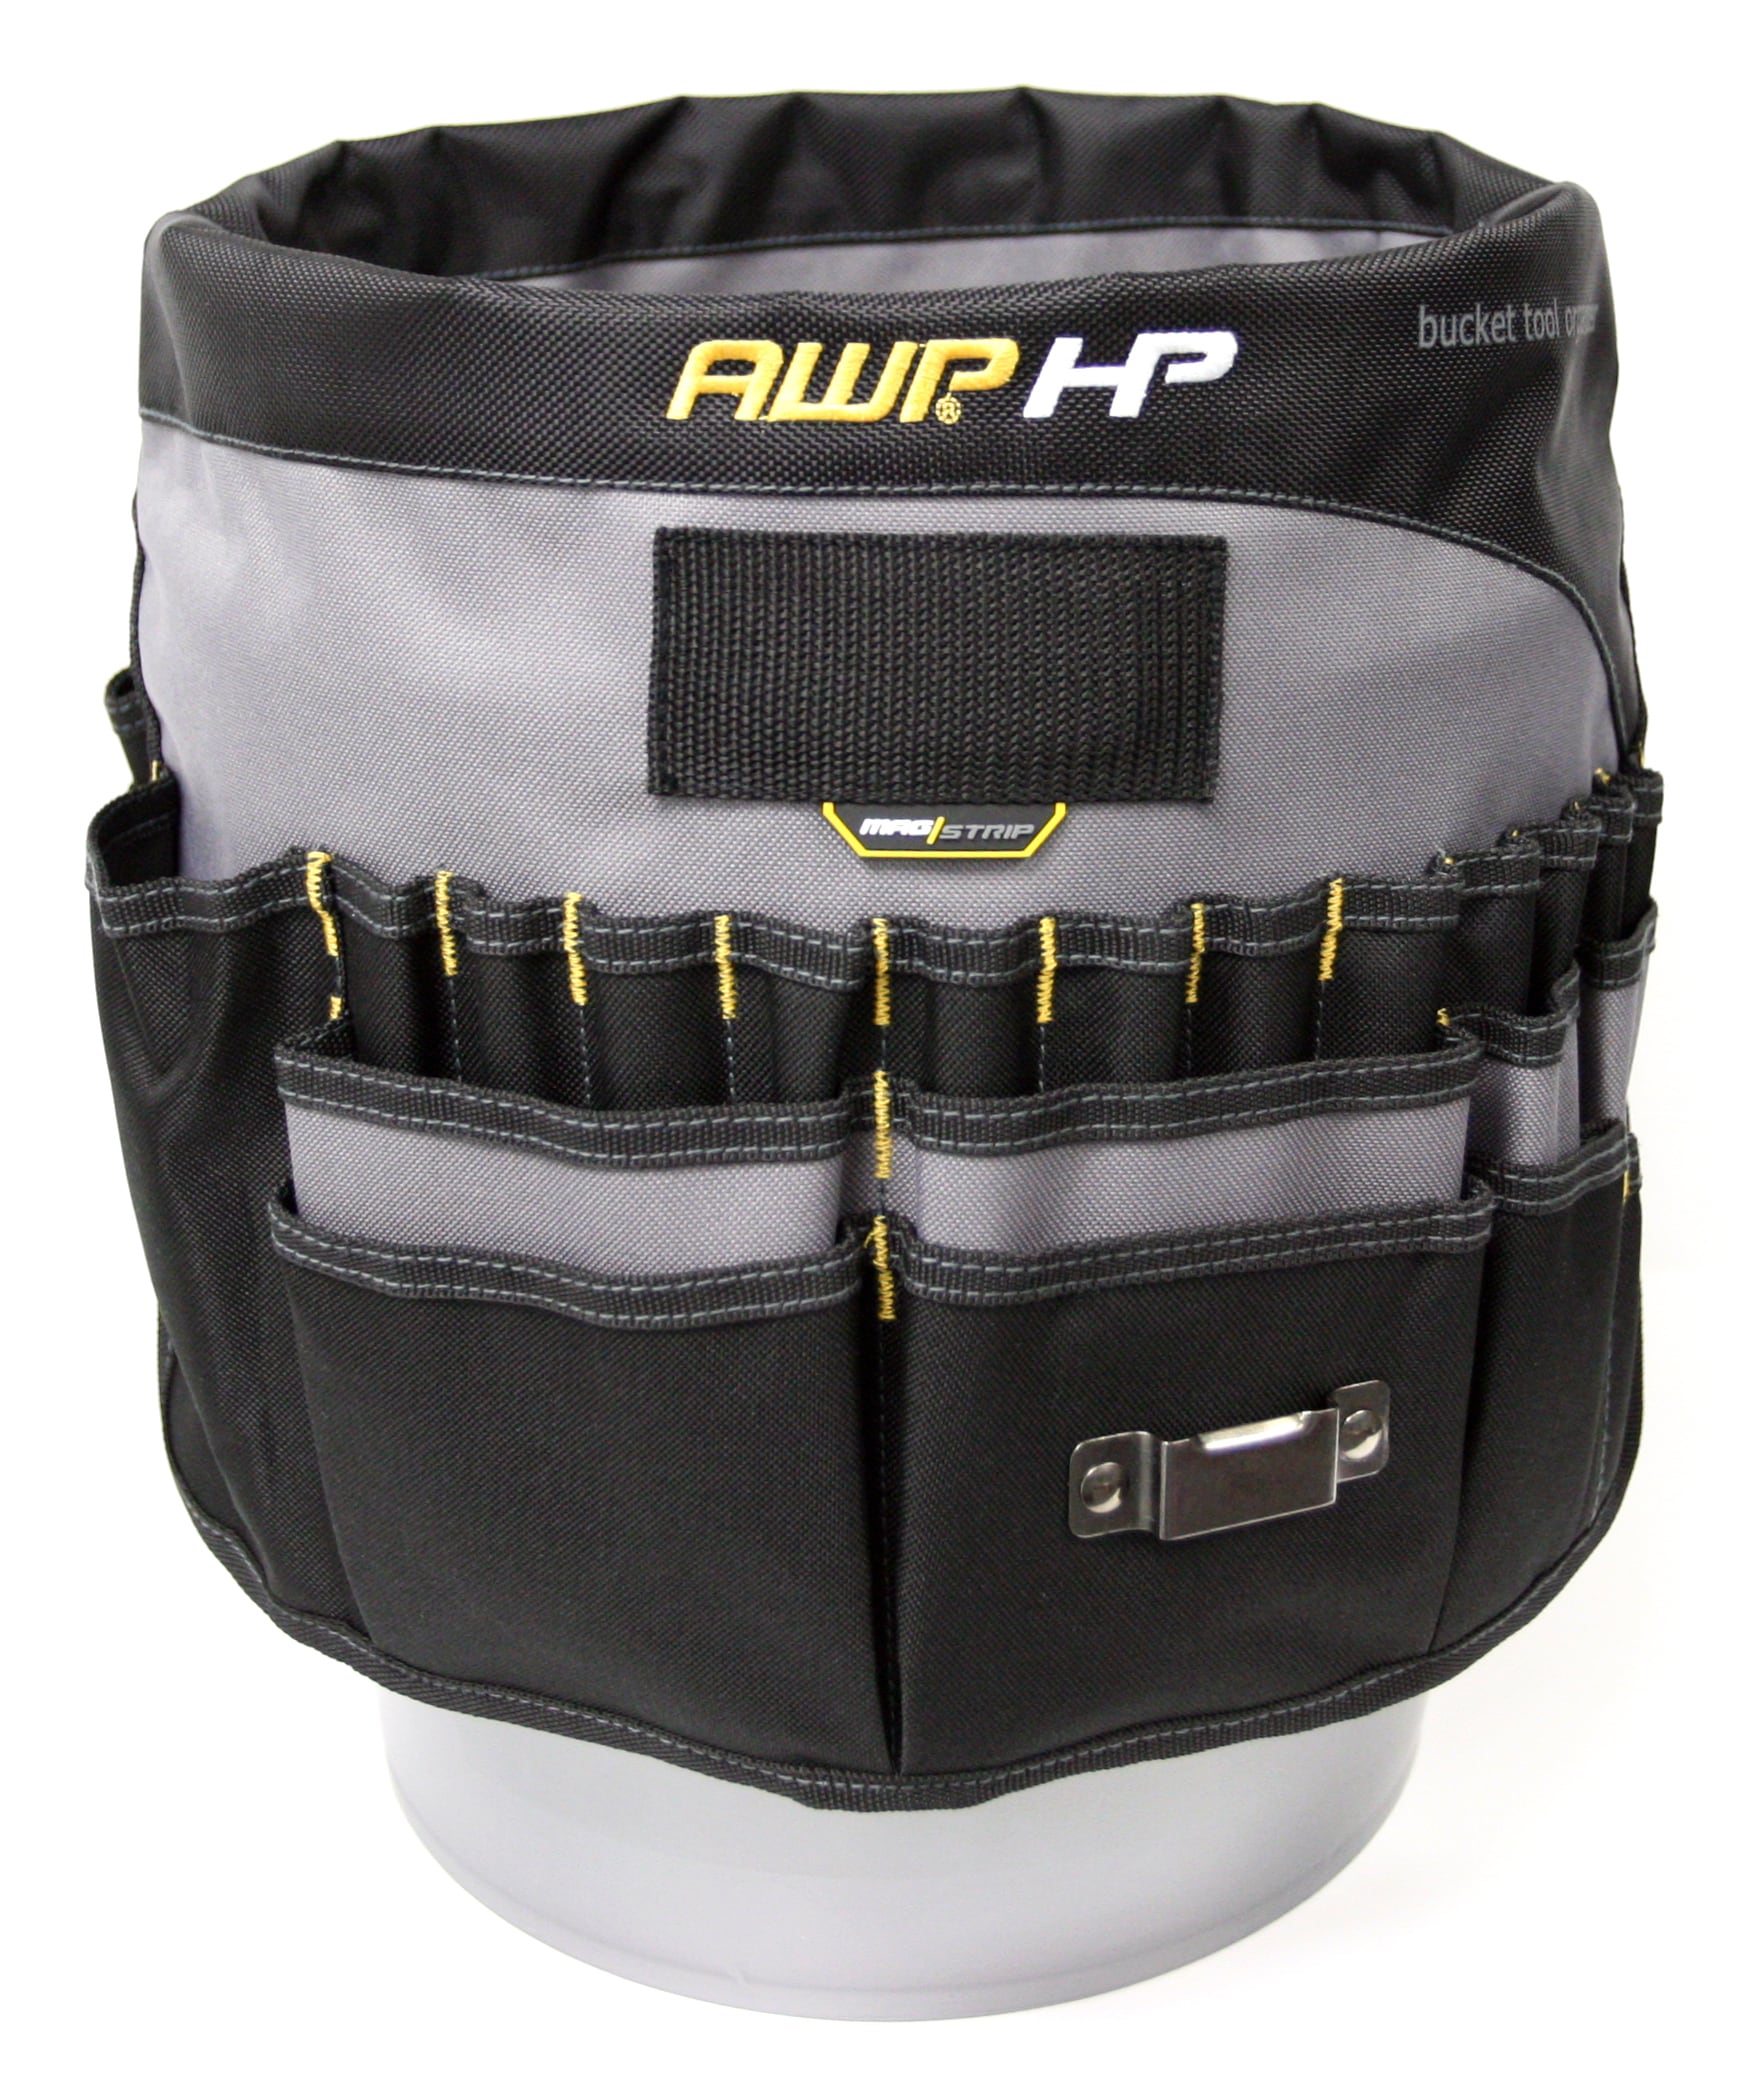 AWP HP 5-Gallon Bucket Organizer at